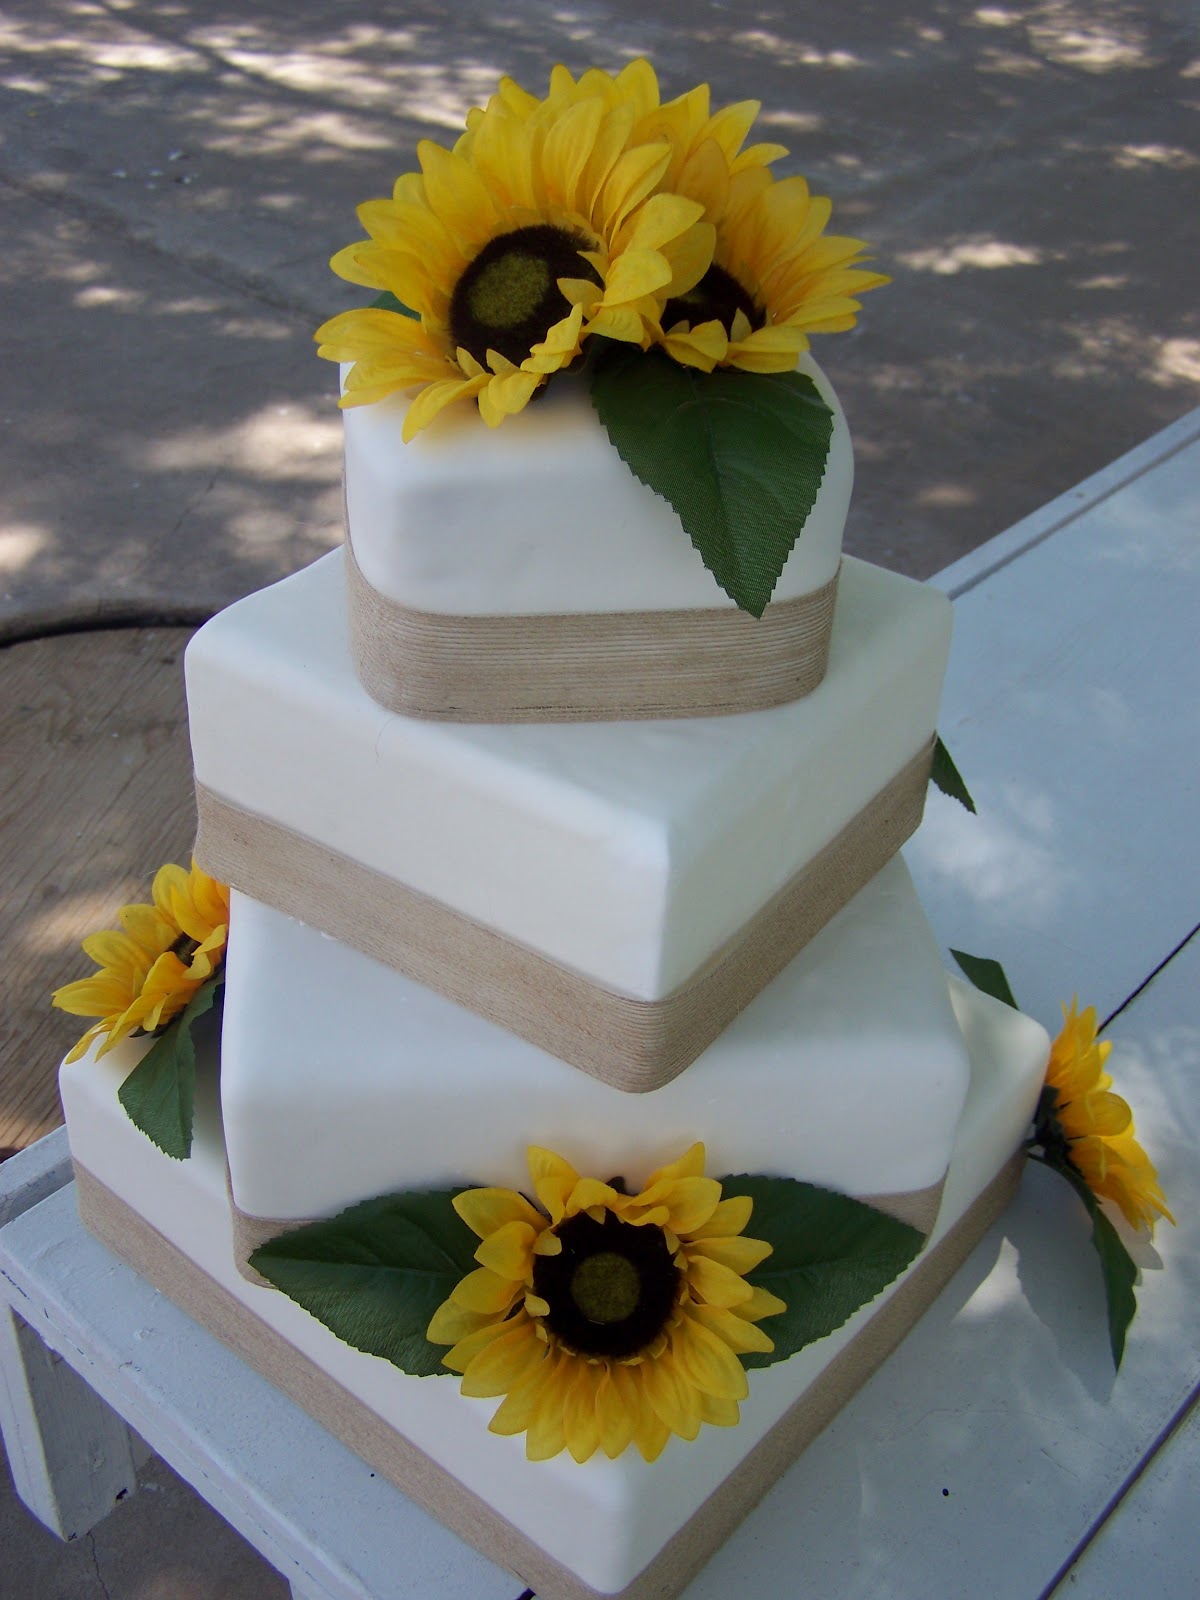  Cake  A Licious Sunflower  Burlap Wedding  Cake 